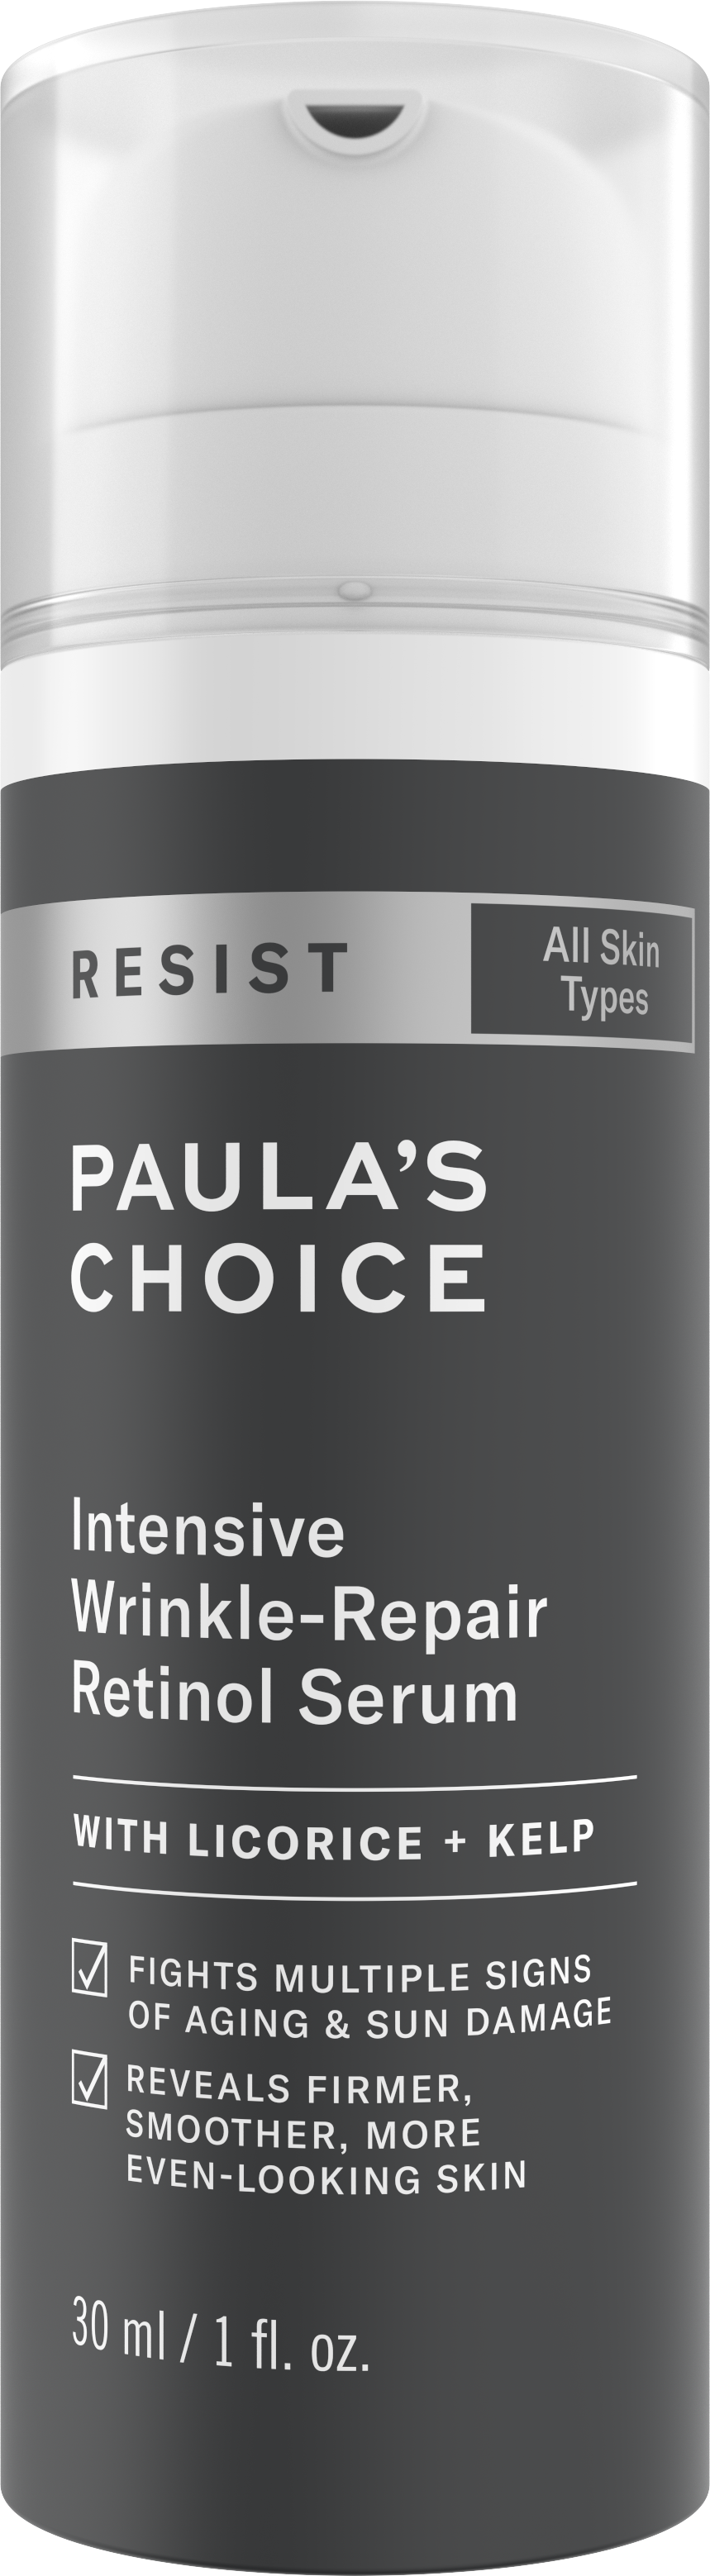 Paula's Choice RESIST Intensive Wrinkle-Repair Retinol Serum Paula's Choice RESIST Intensive Wrinkle-Repair Retinol Serum 1